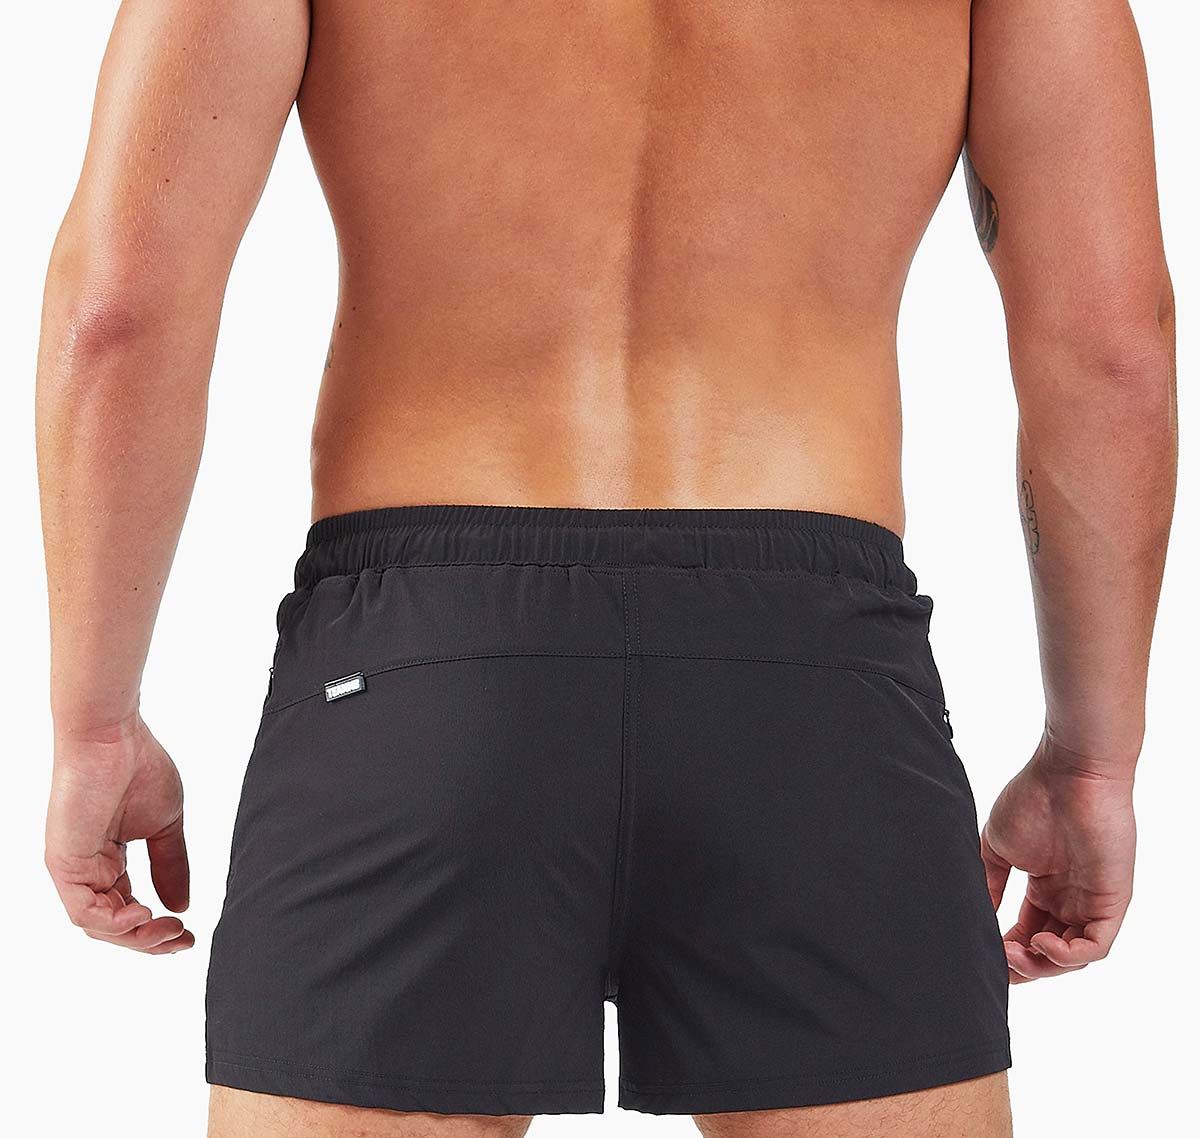 TEAMM8 Training shorts BOLT 3" SHORT, black